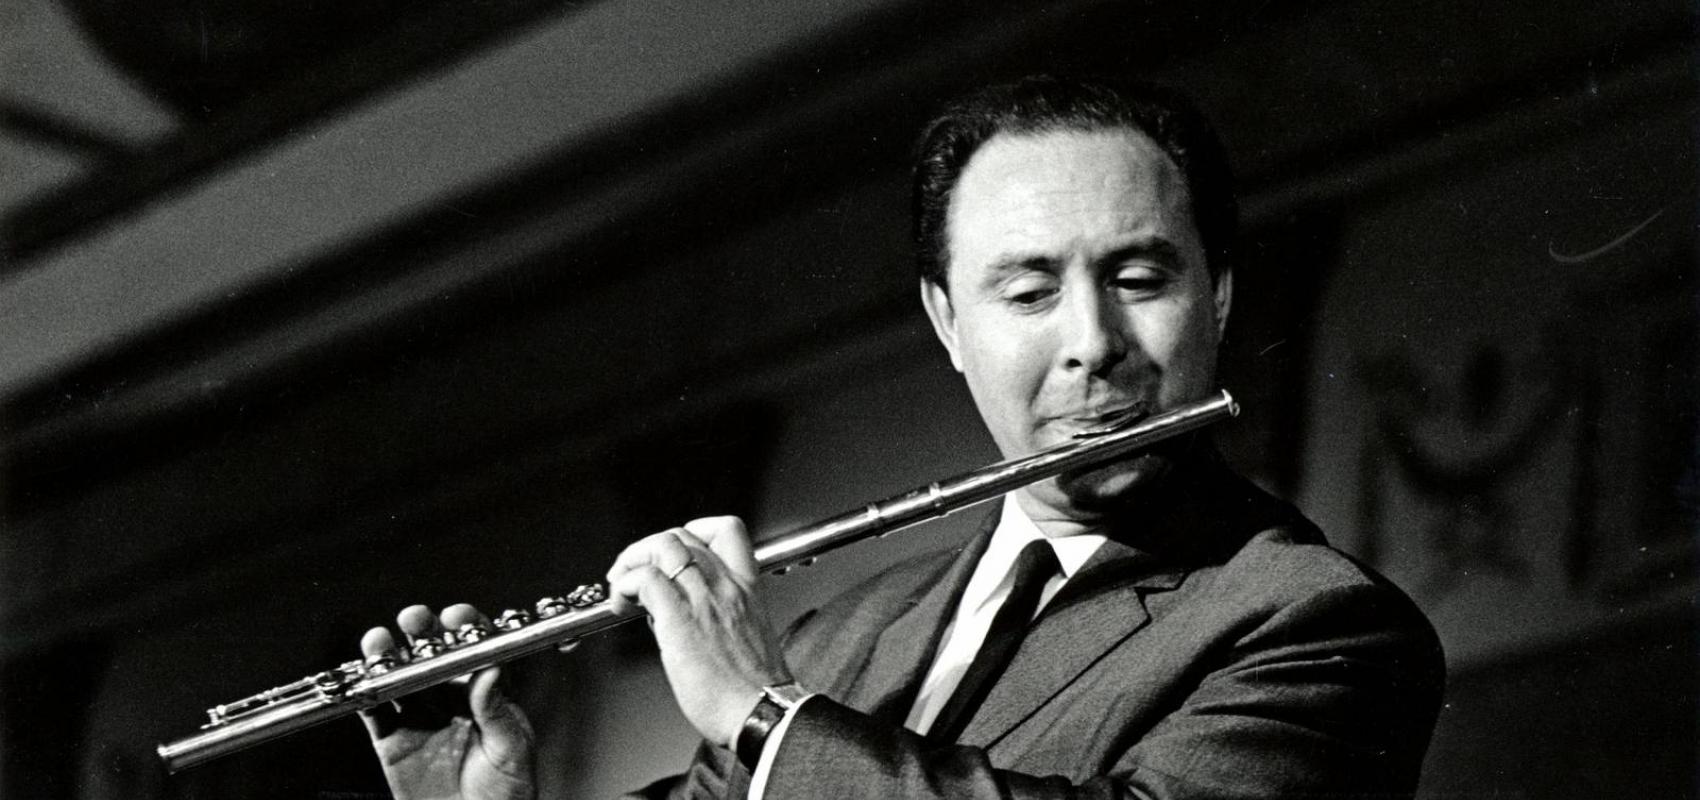 Le flûtiste Jean-Pierre Rampal en 1965 -  - © André le Coz / Bridgeman Images